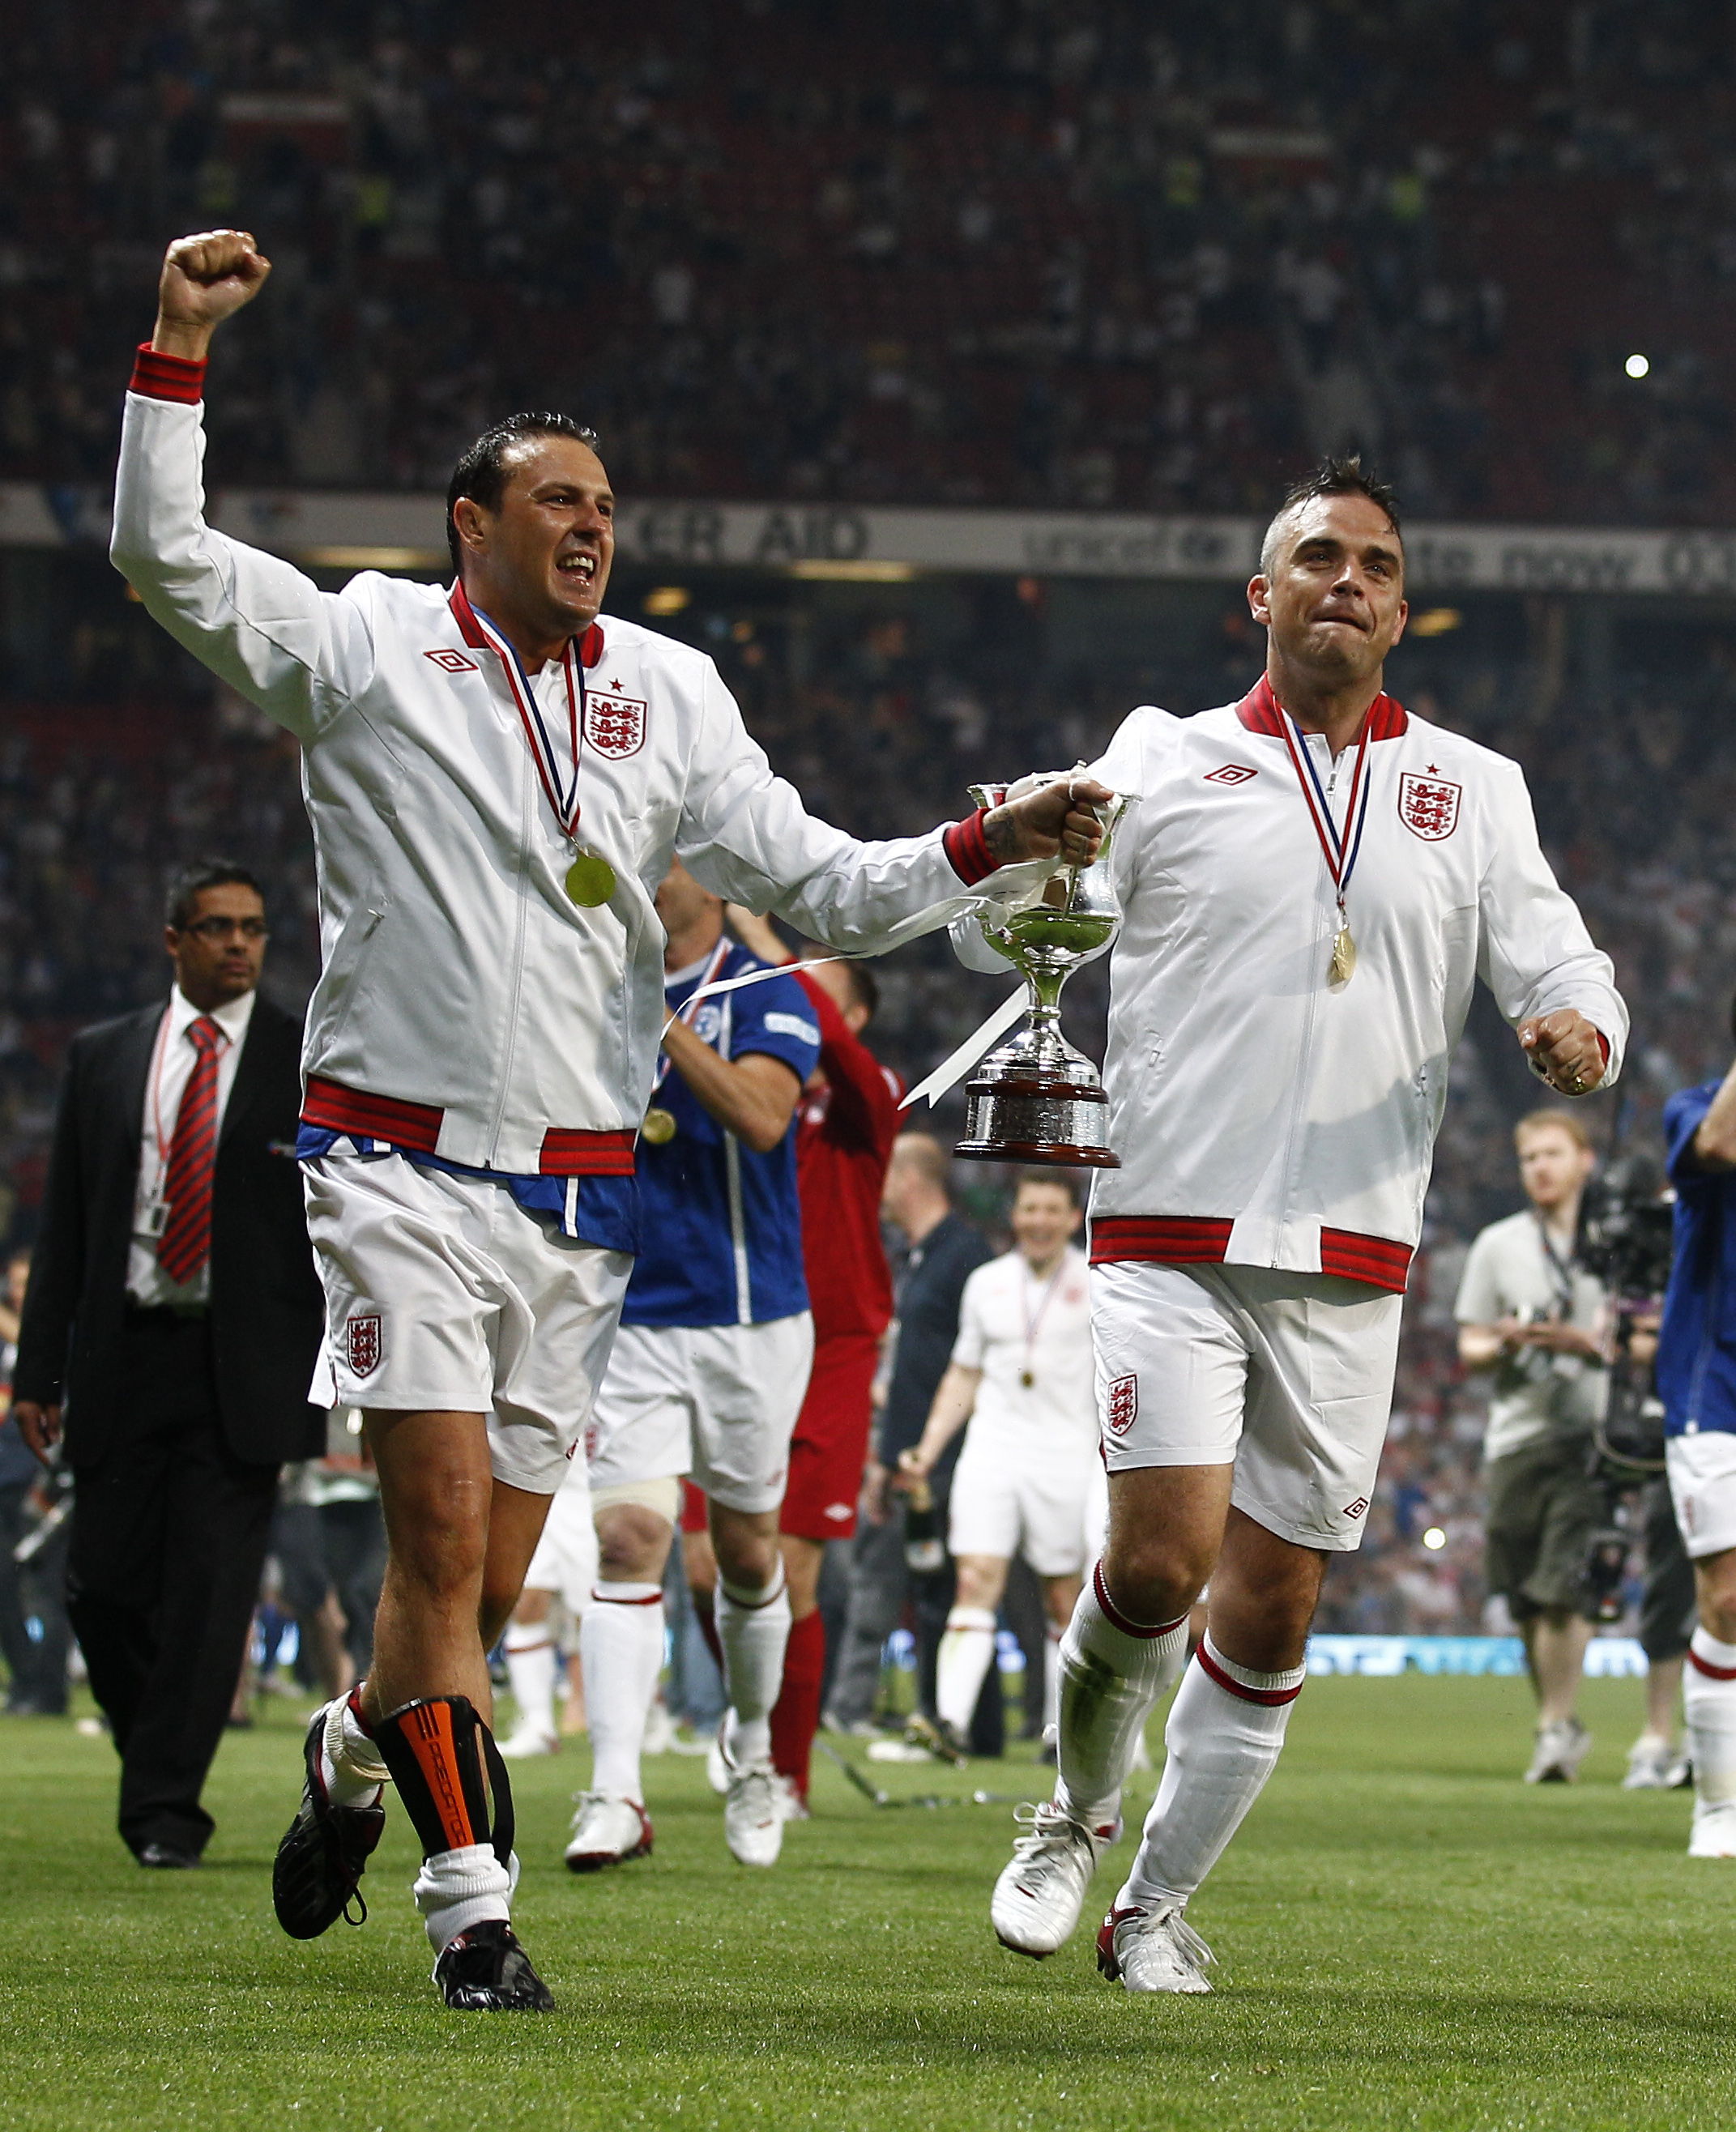 Många kändisar deltog. Här firar Robbie Williams (höger) Englands 3-1-seger tillsammans med Paddy McGuiness.